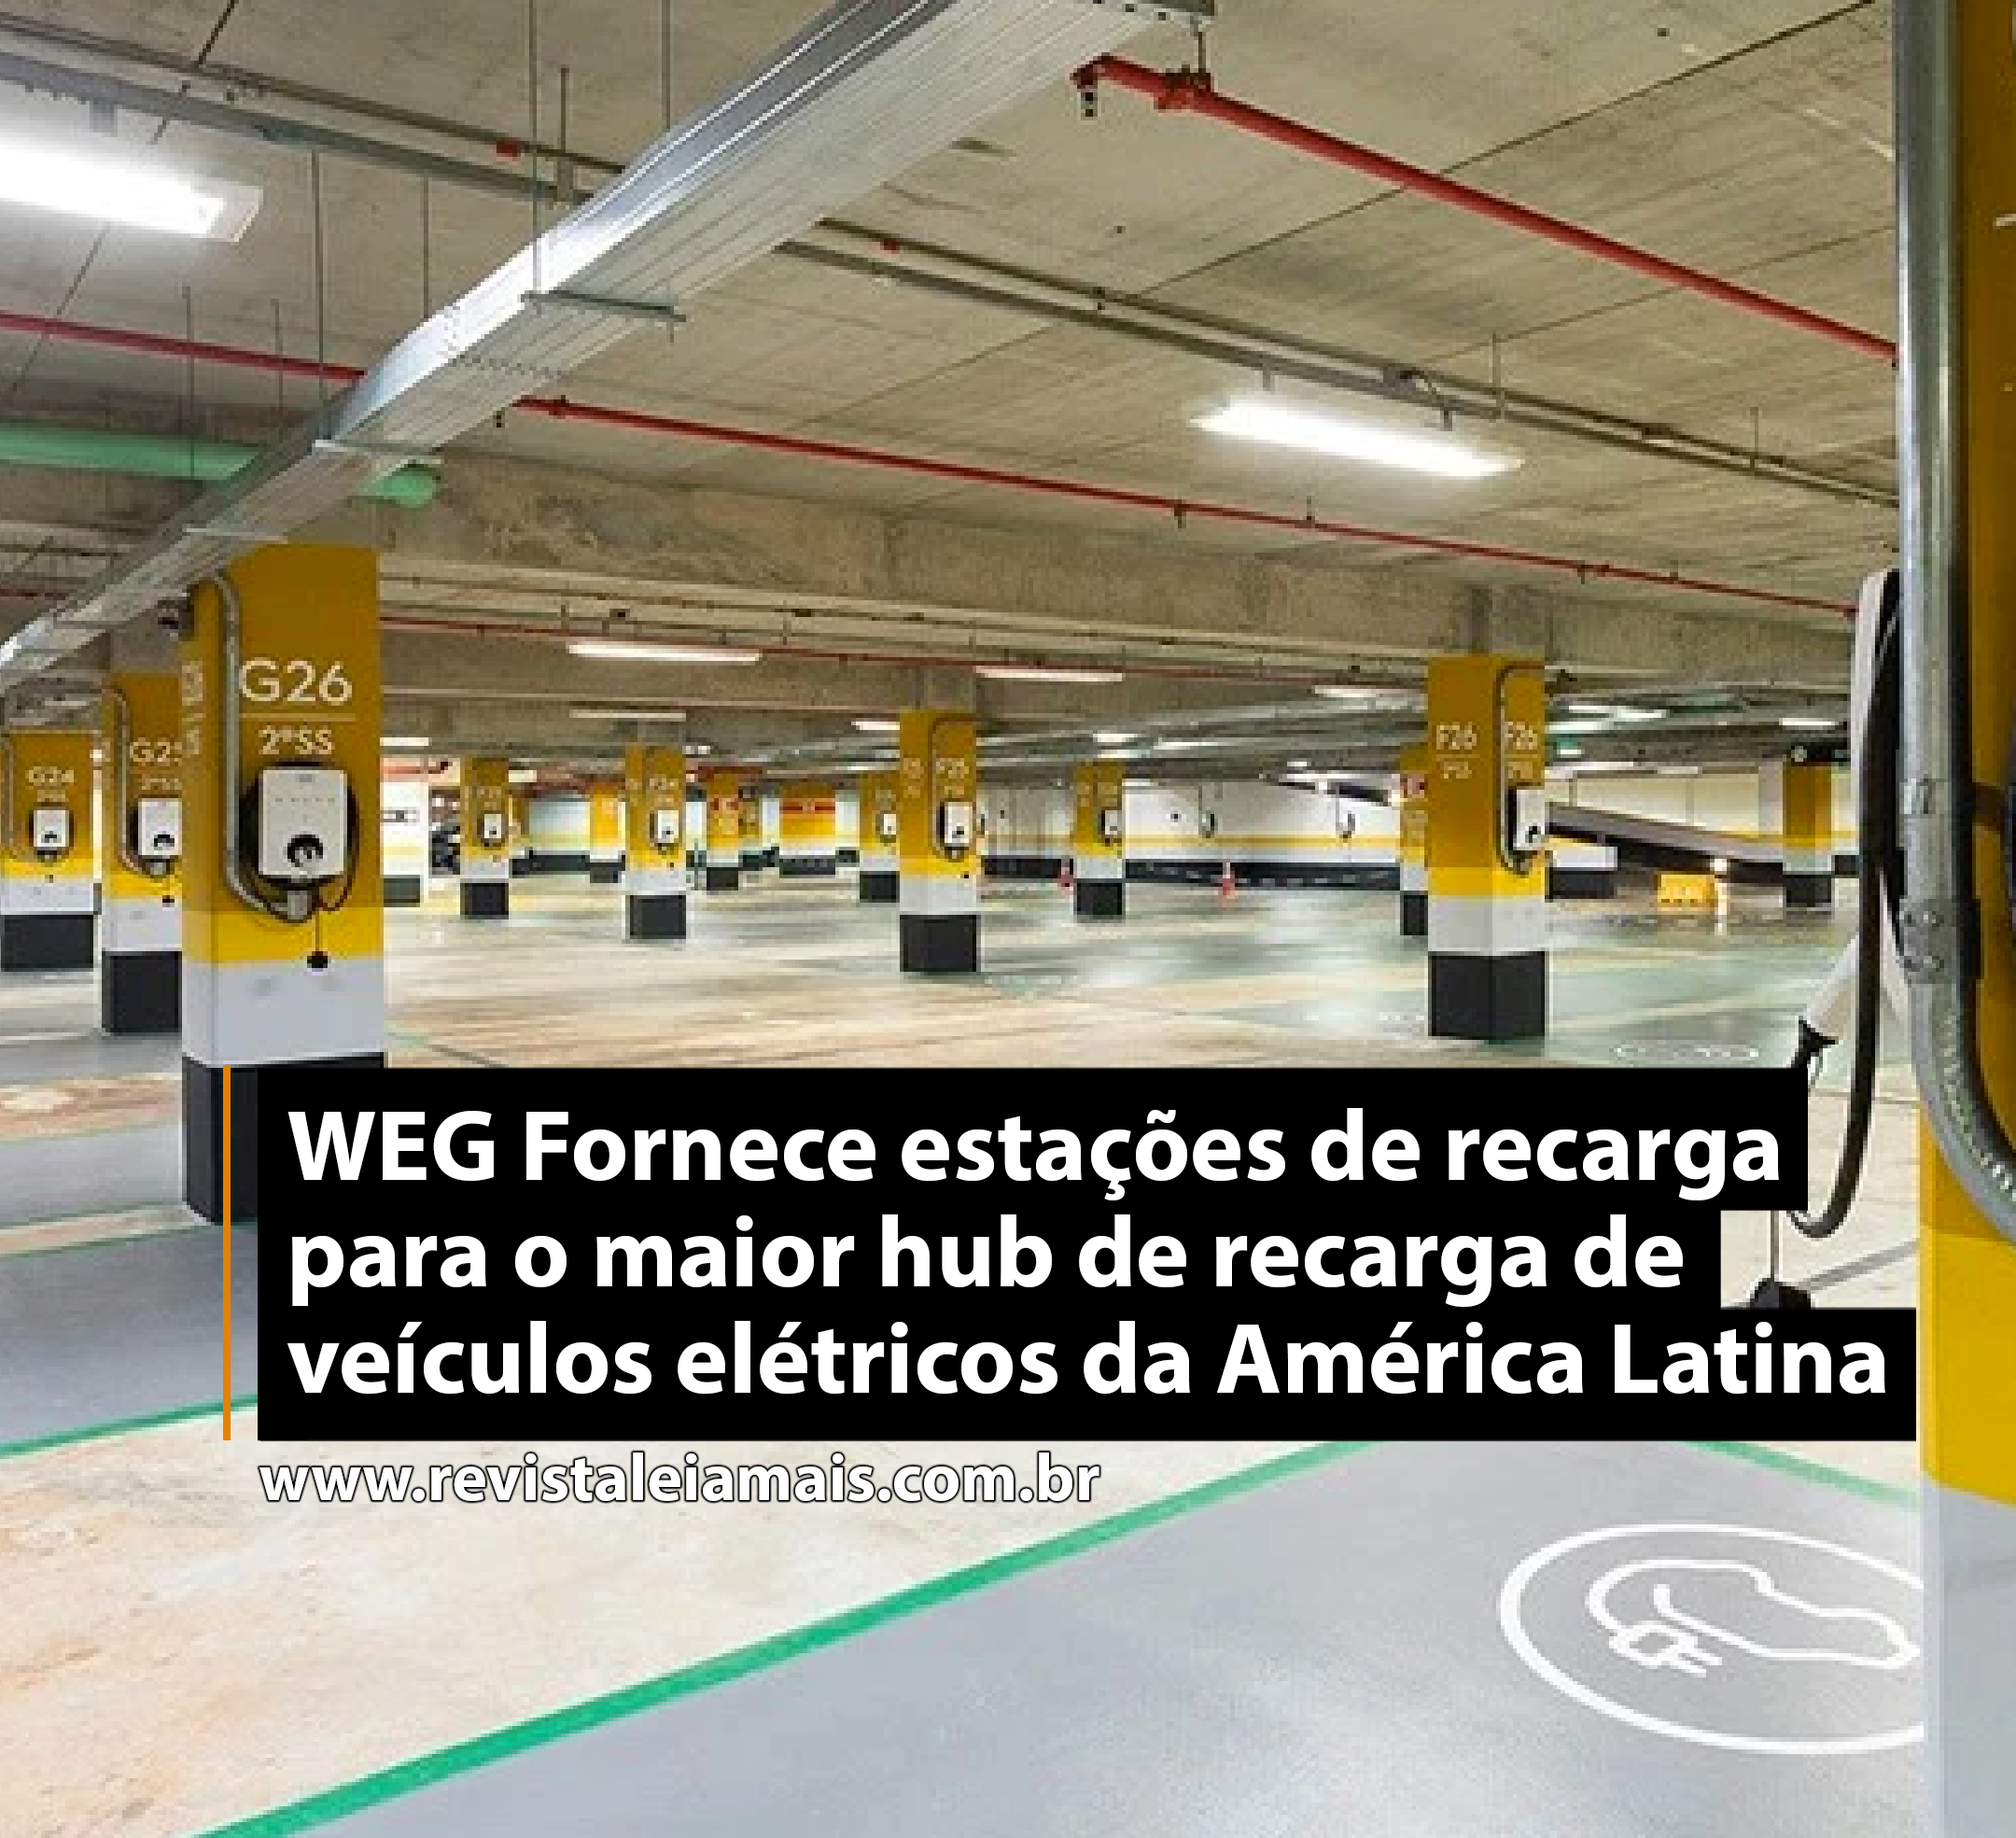 WEG Fornece estações de recarga para o maior hub de recarga de veículos elétricos da América Latina